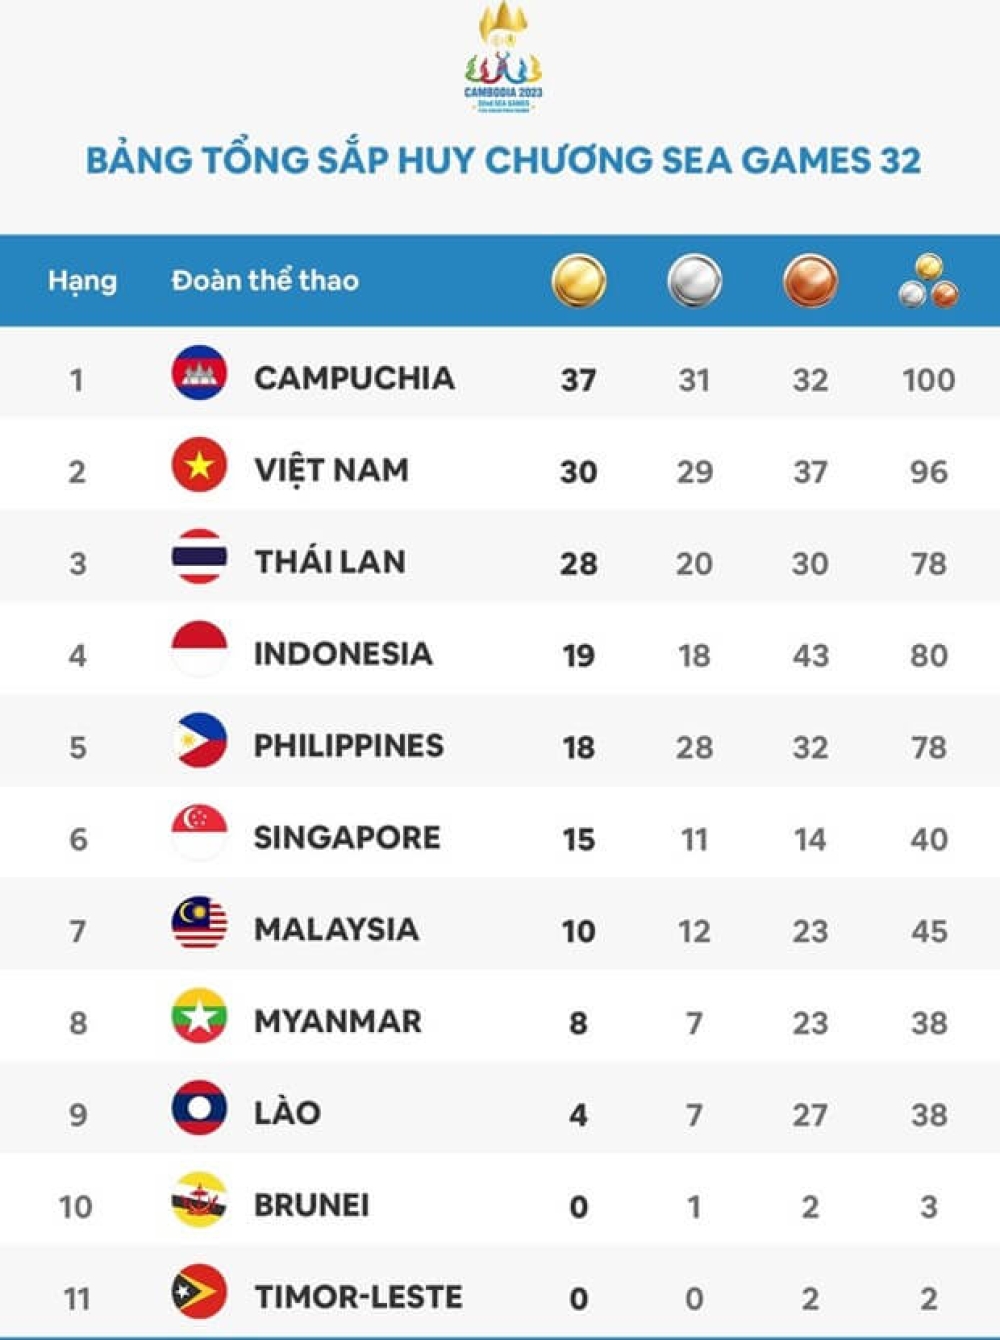 Bảng tổng sắp huy chương Sea Games 32 mới nhất: Việt Nam vươn lên top nhì